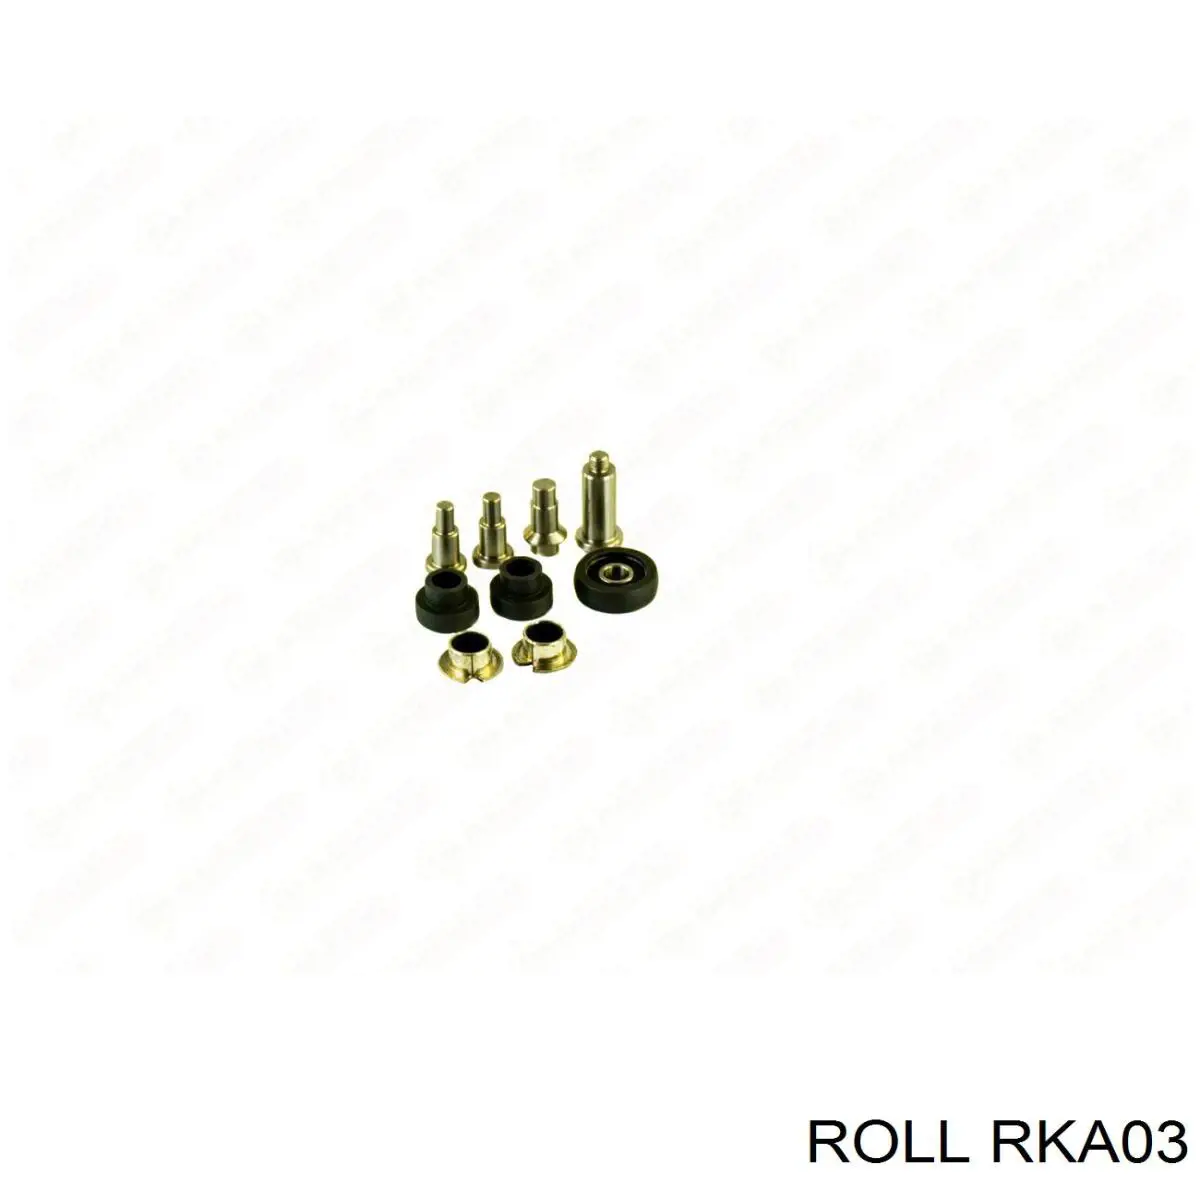 RKA03 Roll guía rodillo, puerta corrediza, derecho inferior